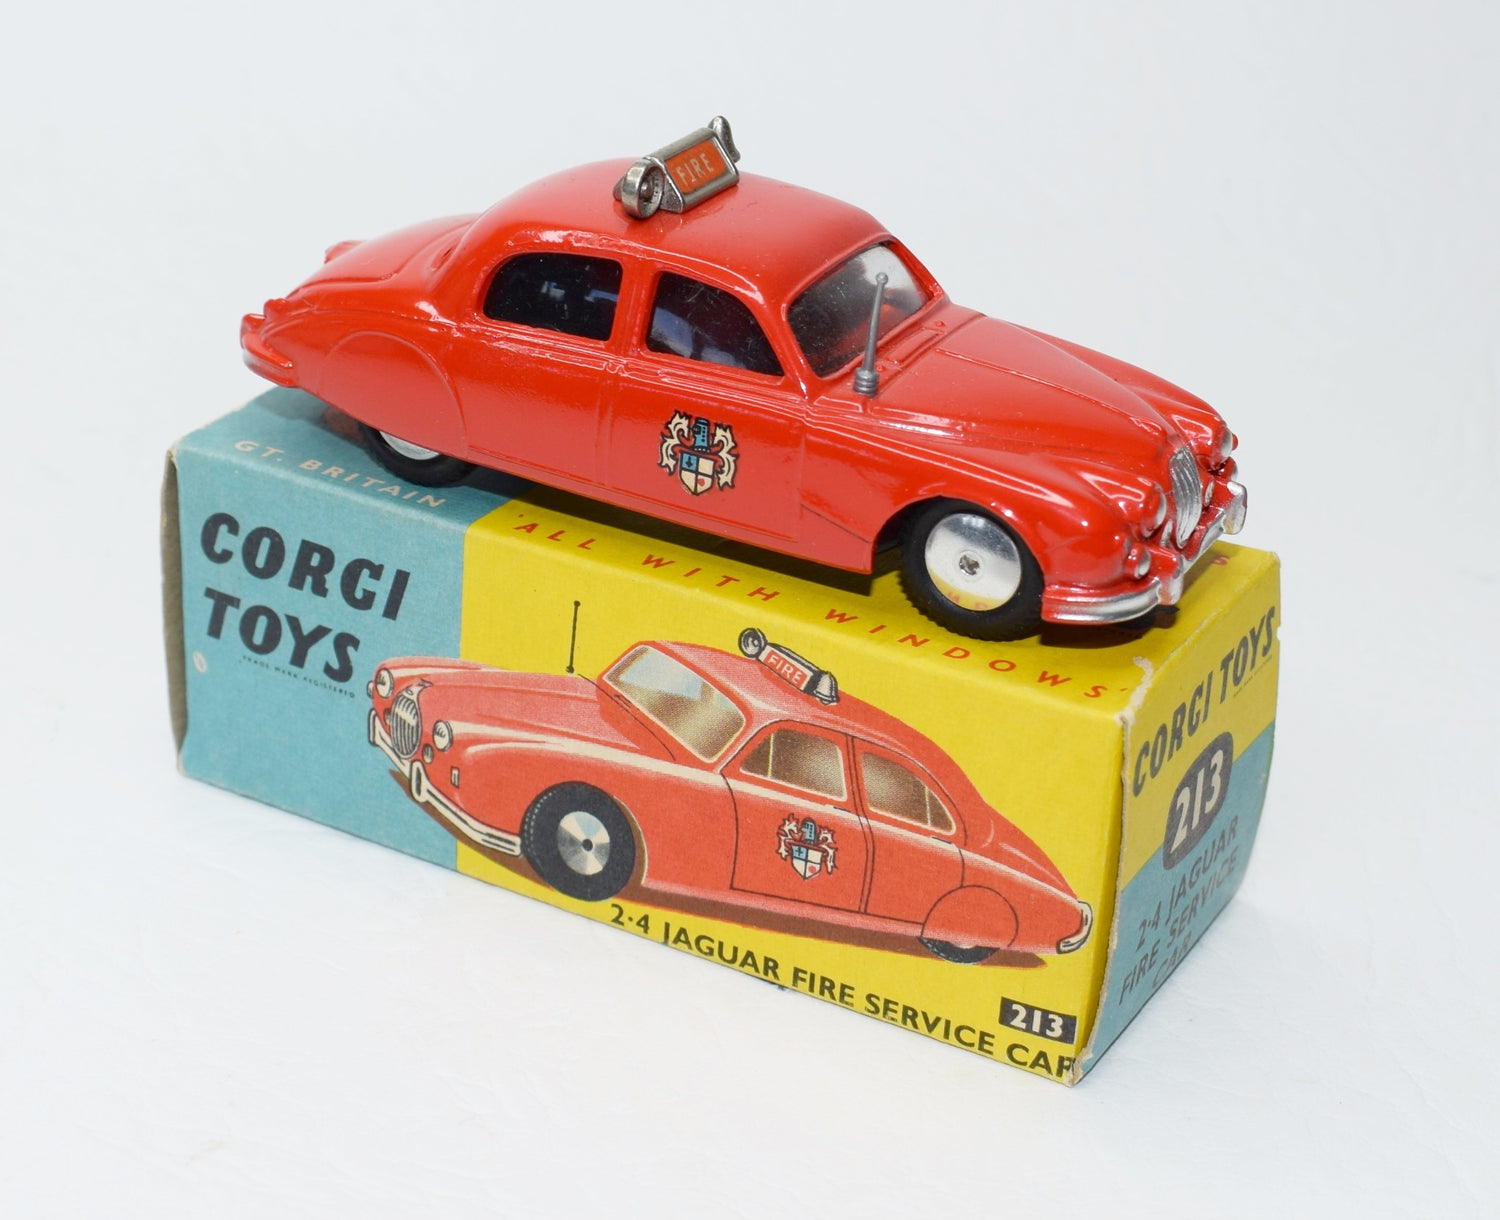 Corgi toys 213 2.4 Jaguar Fire Car Very Near Mint/Boxed (C.C).